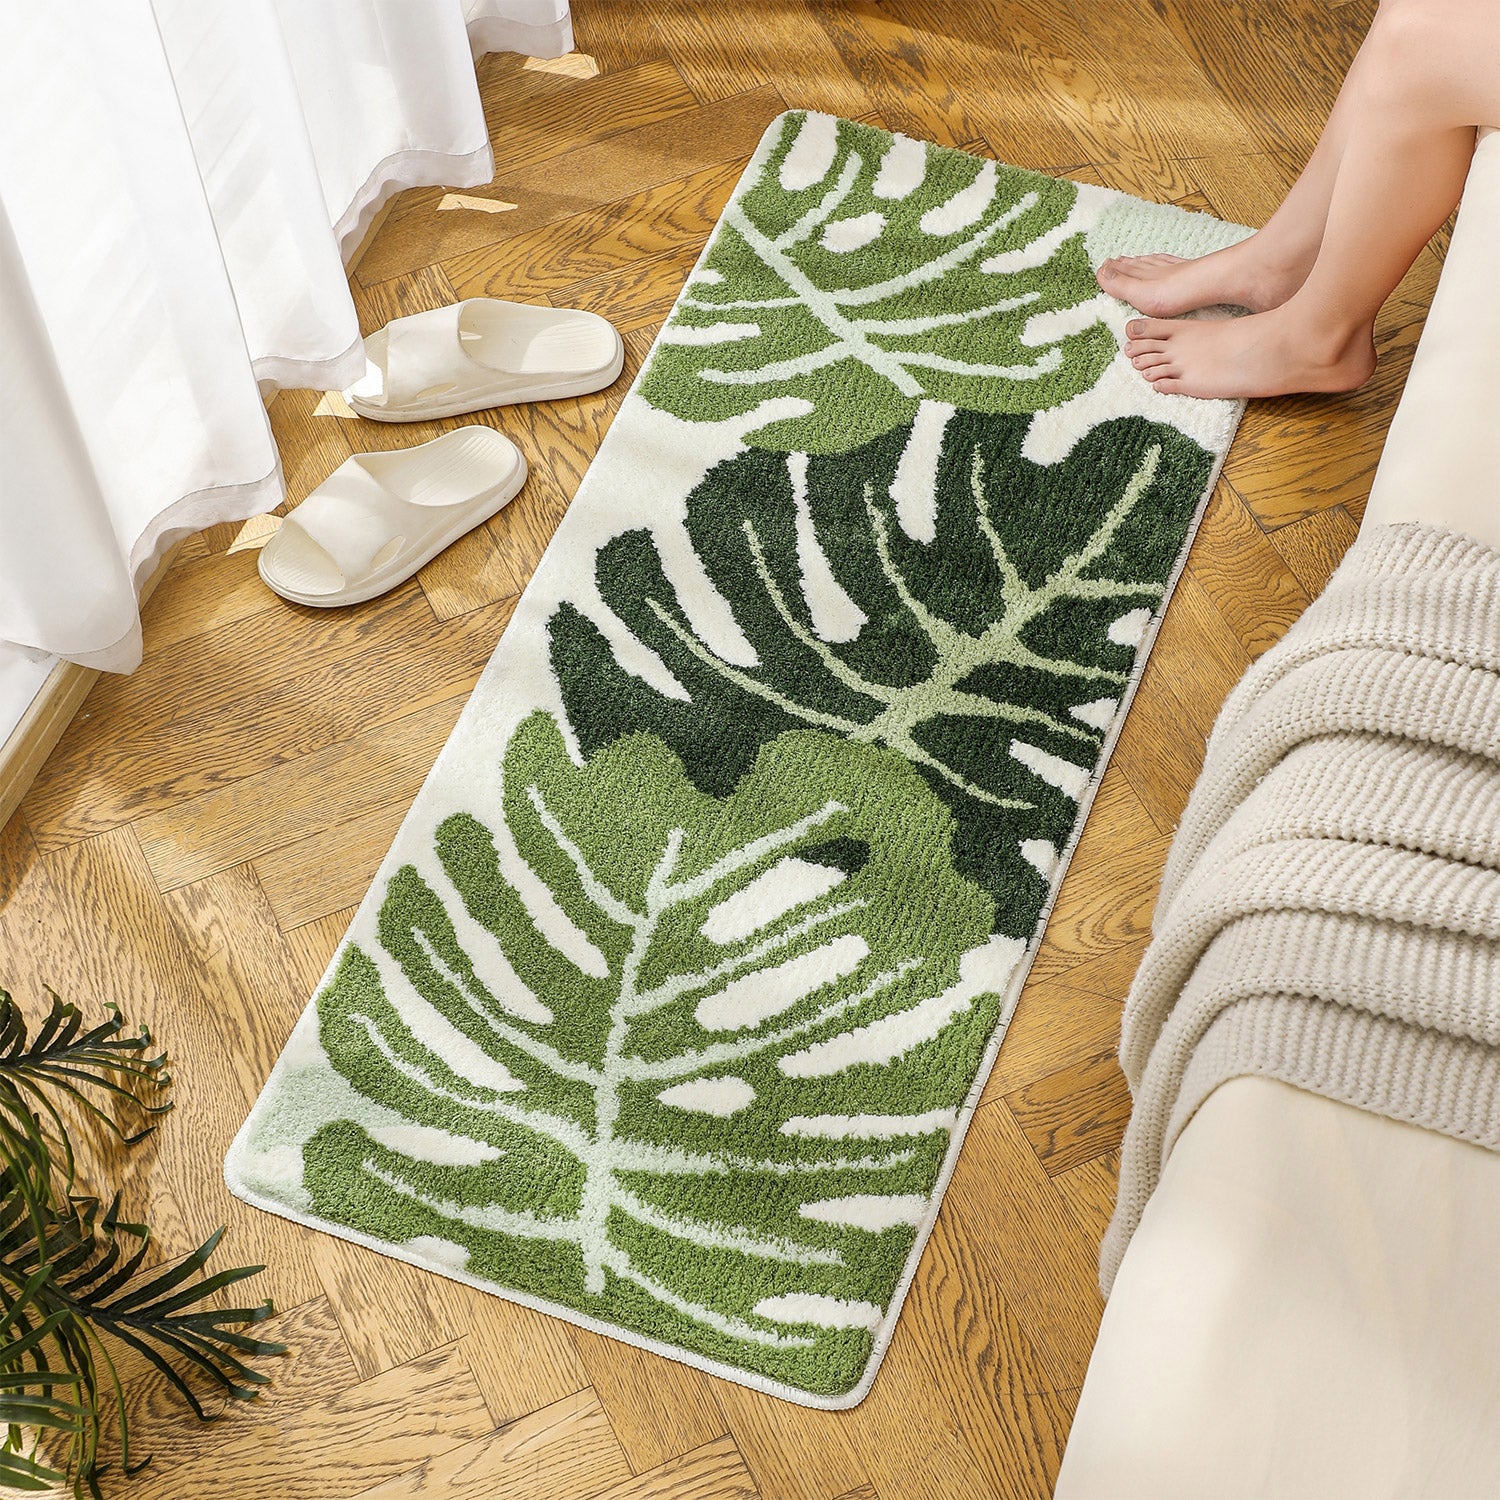 Feblilac Green Monstera Leaves Runner Mat, Tufted Mat for Bedroom or Bathroom, 19.7"x47.2"